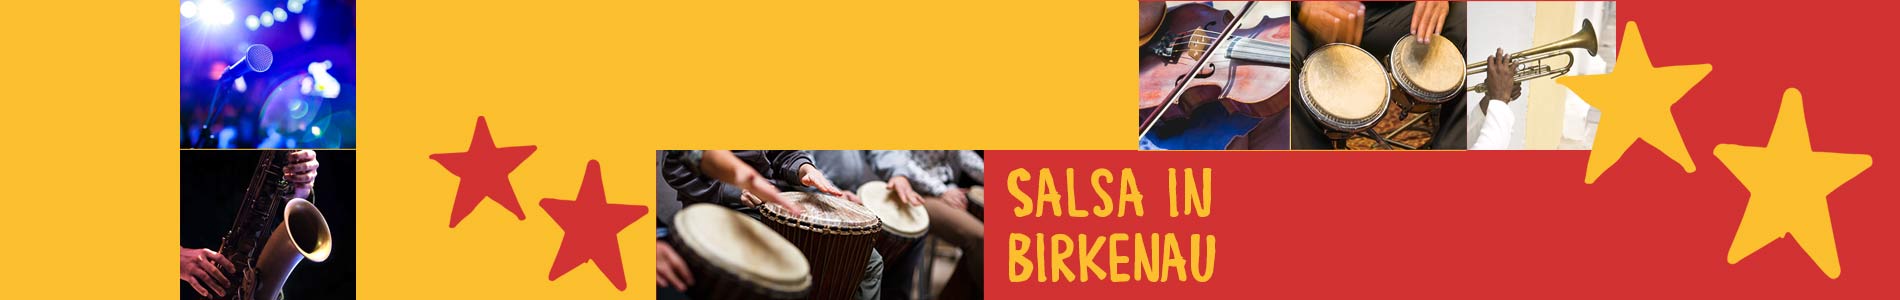 Salsa in Birkenau – Salsa lernen und tanzen, Tanzkurse, Partys, Veranstaltungen